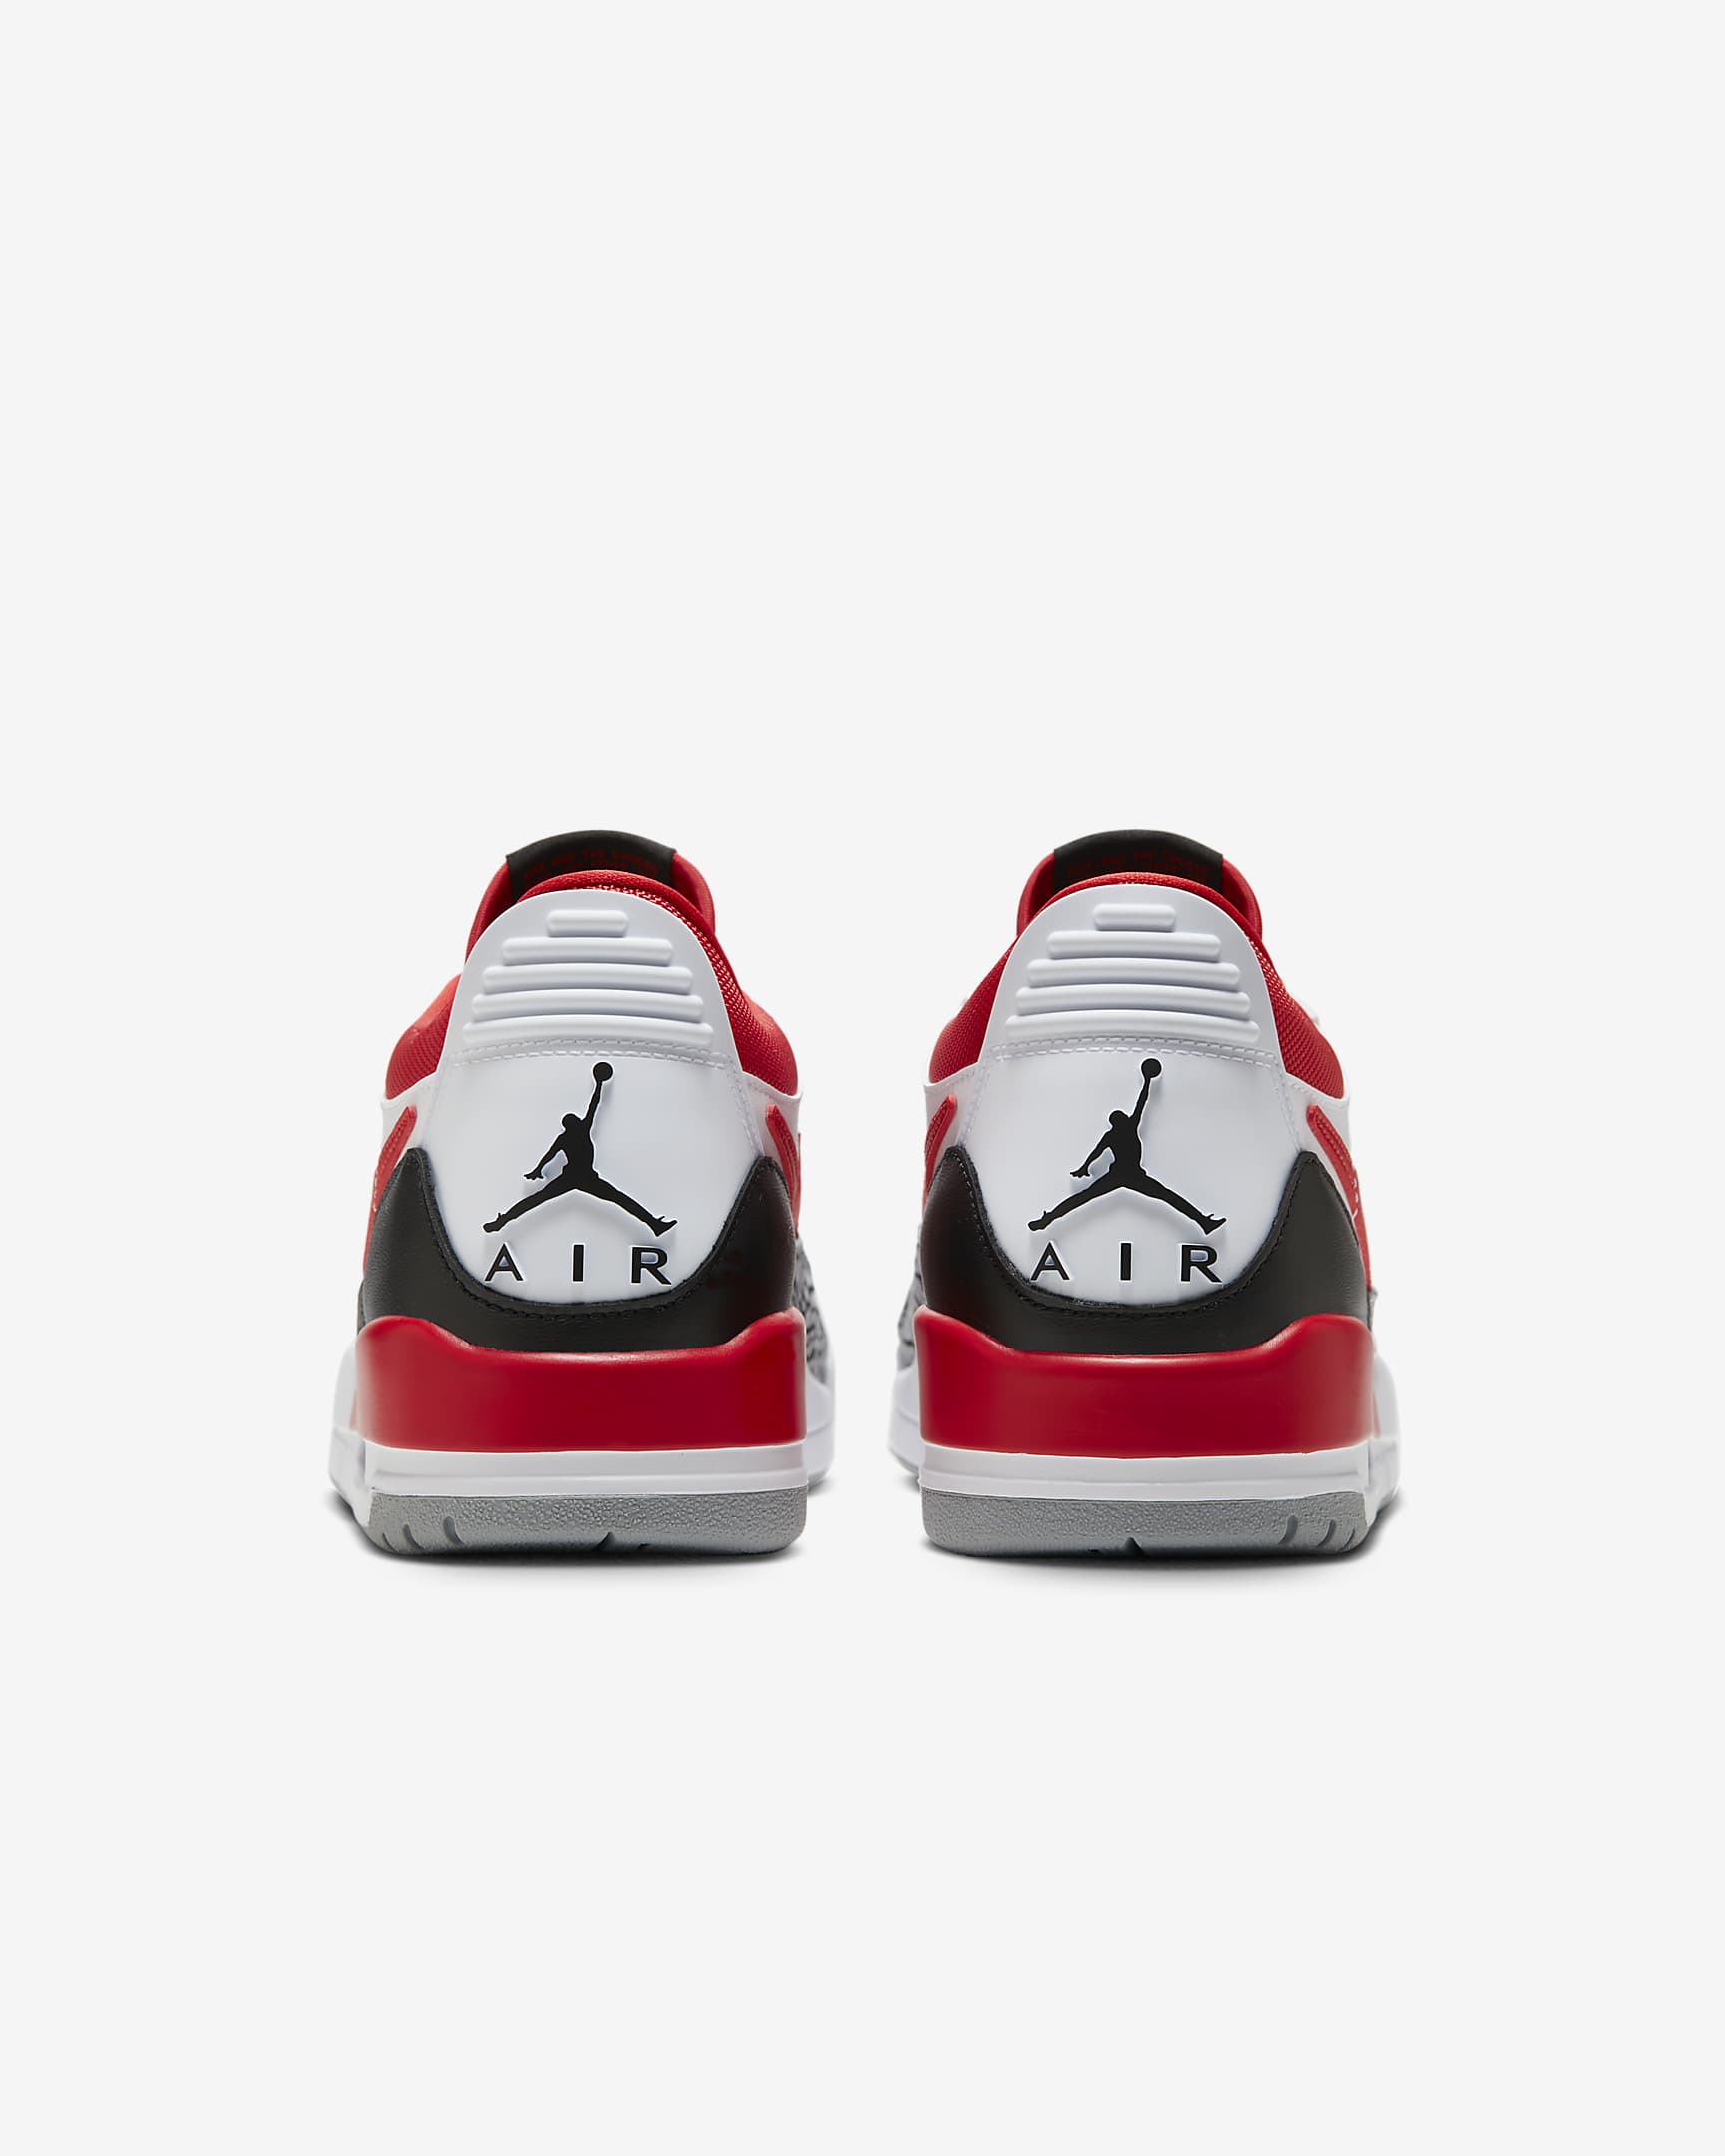 Air Jordan Legacy 312 Low Men #39 s Shoes Nike CA